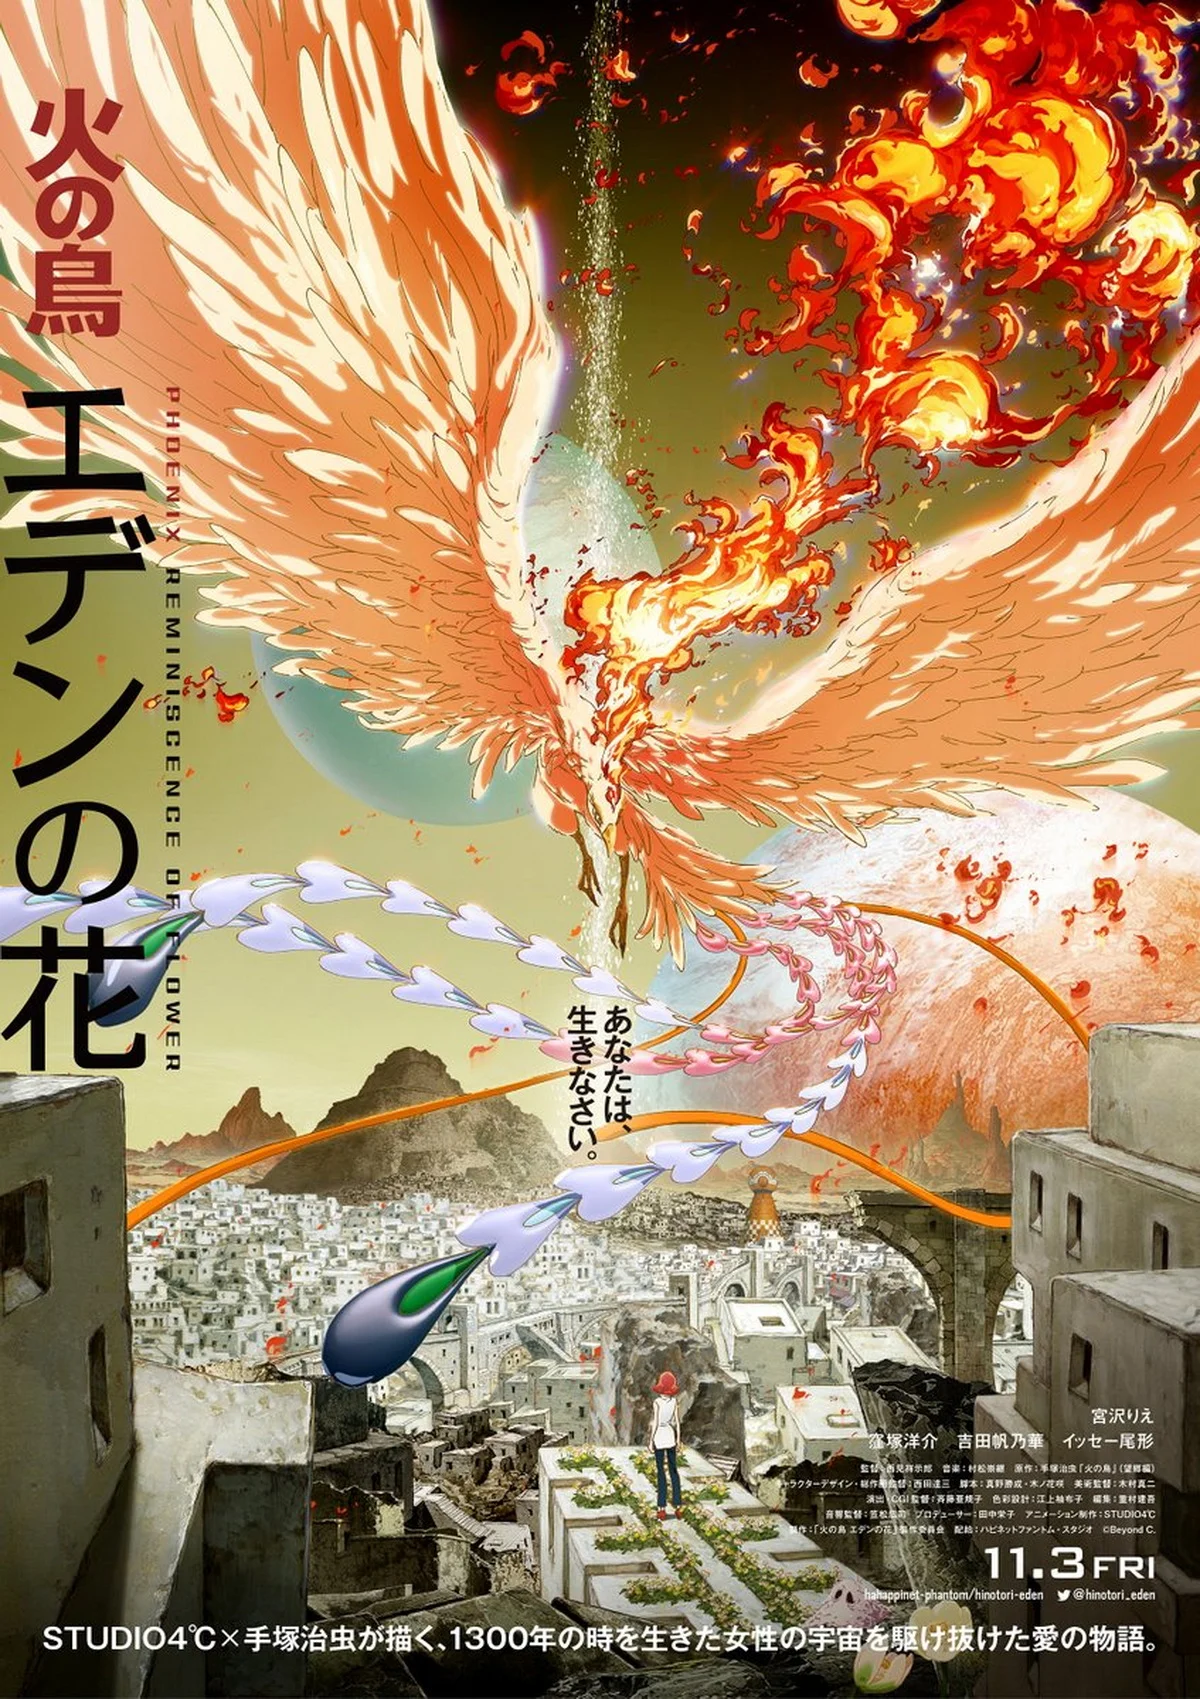 Создатели Phoenix: Eden17 раскрыли множество подробностей аниме - фото 1